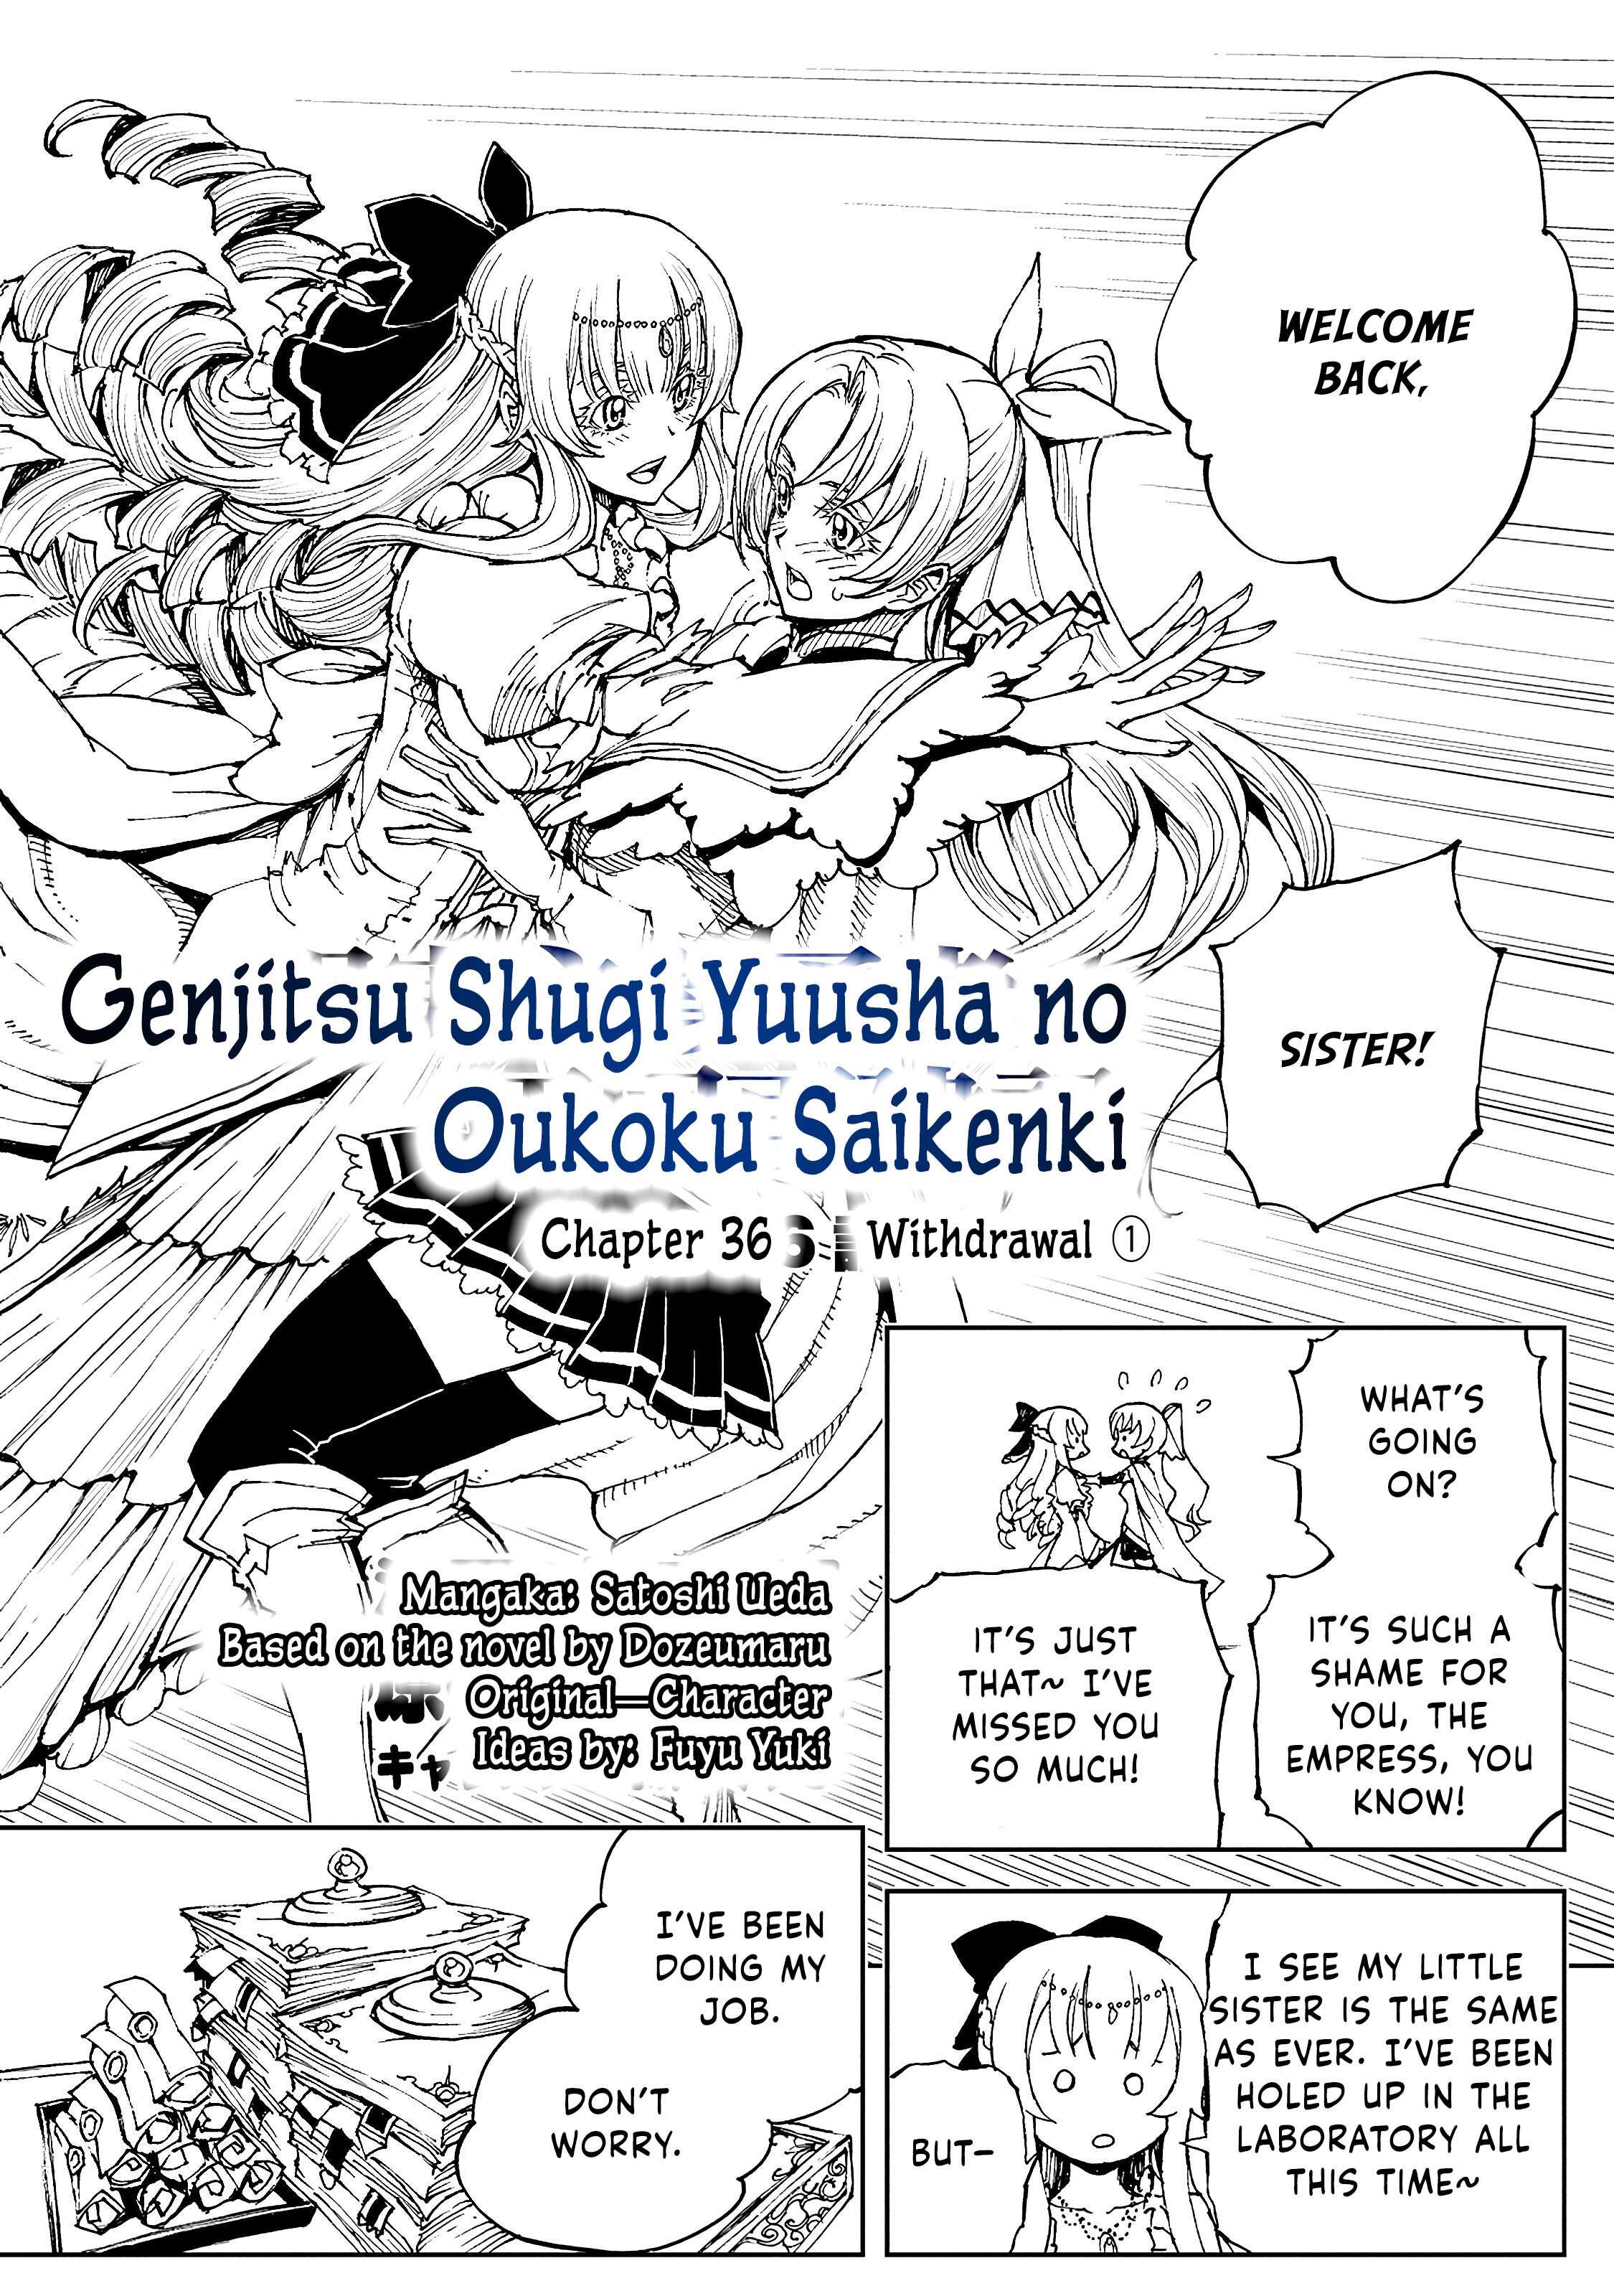 How a Realist Hero Rebuilt the Kingdom (Genjitsu Shugi Yuusha no Oukoku  Saikenki) [Manga Vol. 5] by Dozeumaru